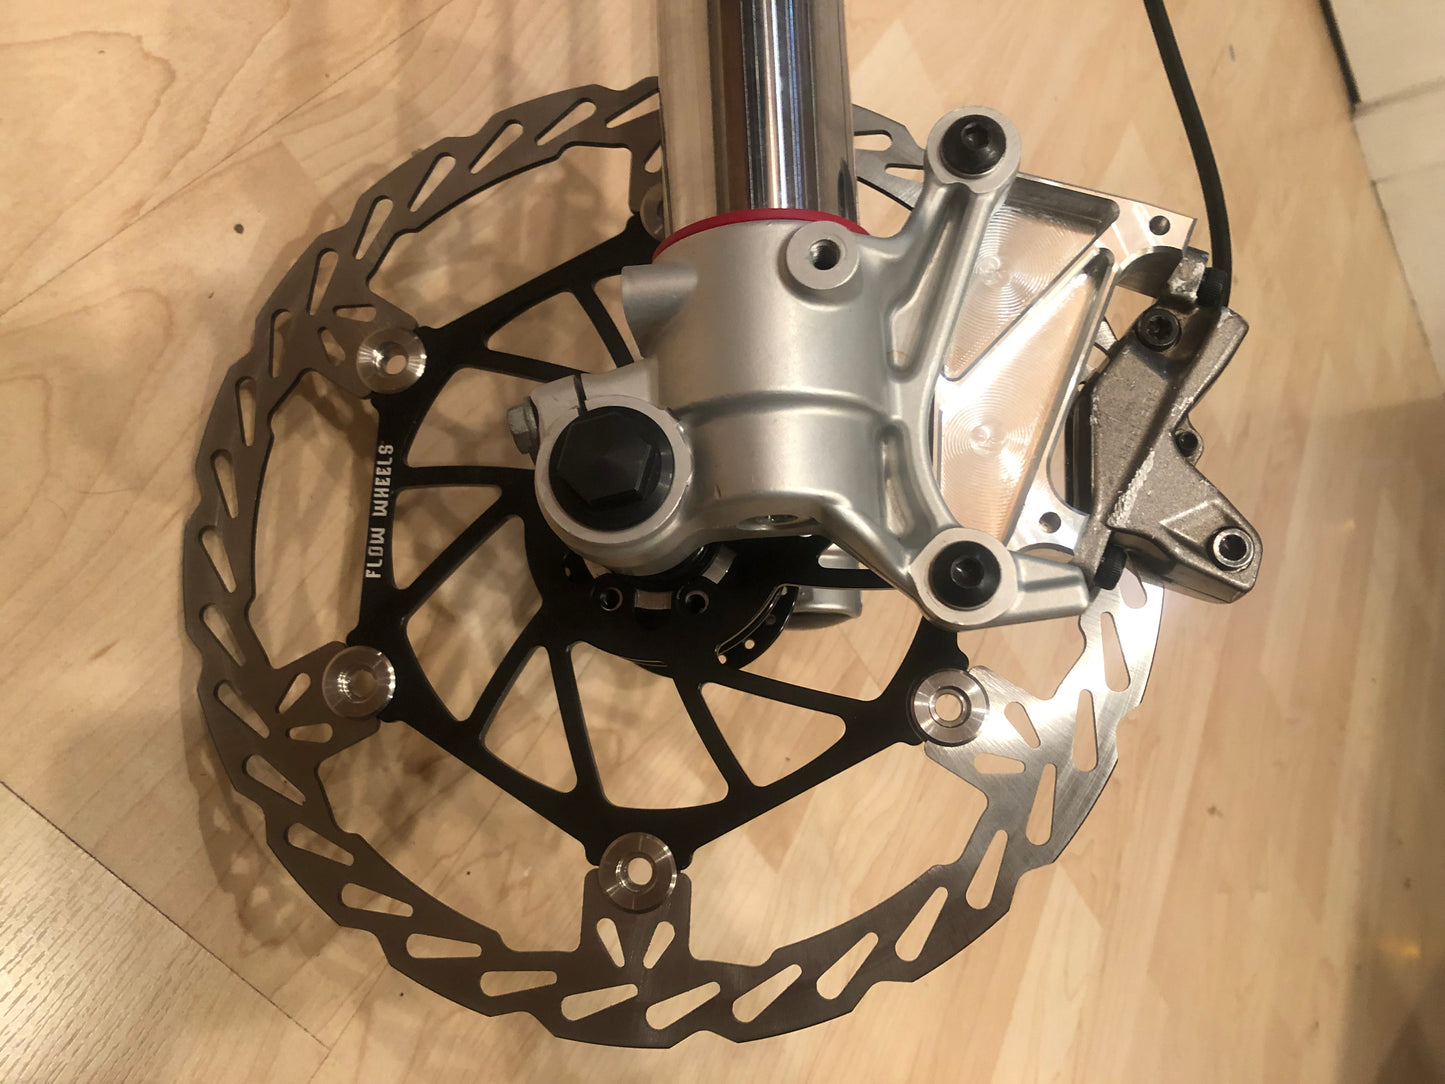 KTM fork brake/wheel adapter kit for stock wheels and brakes